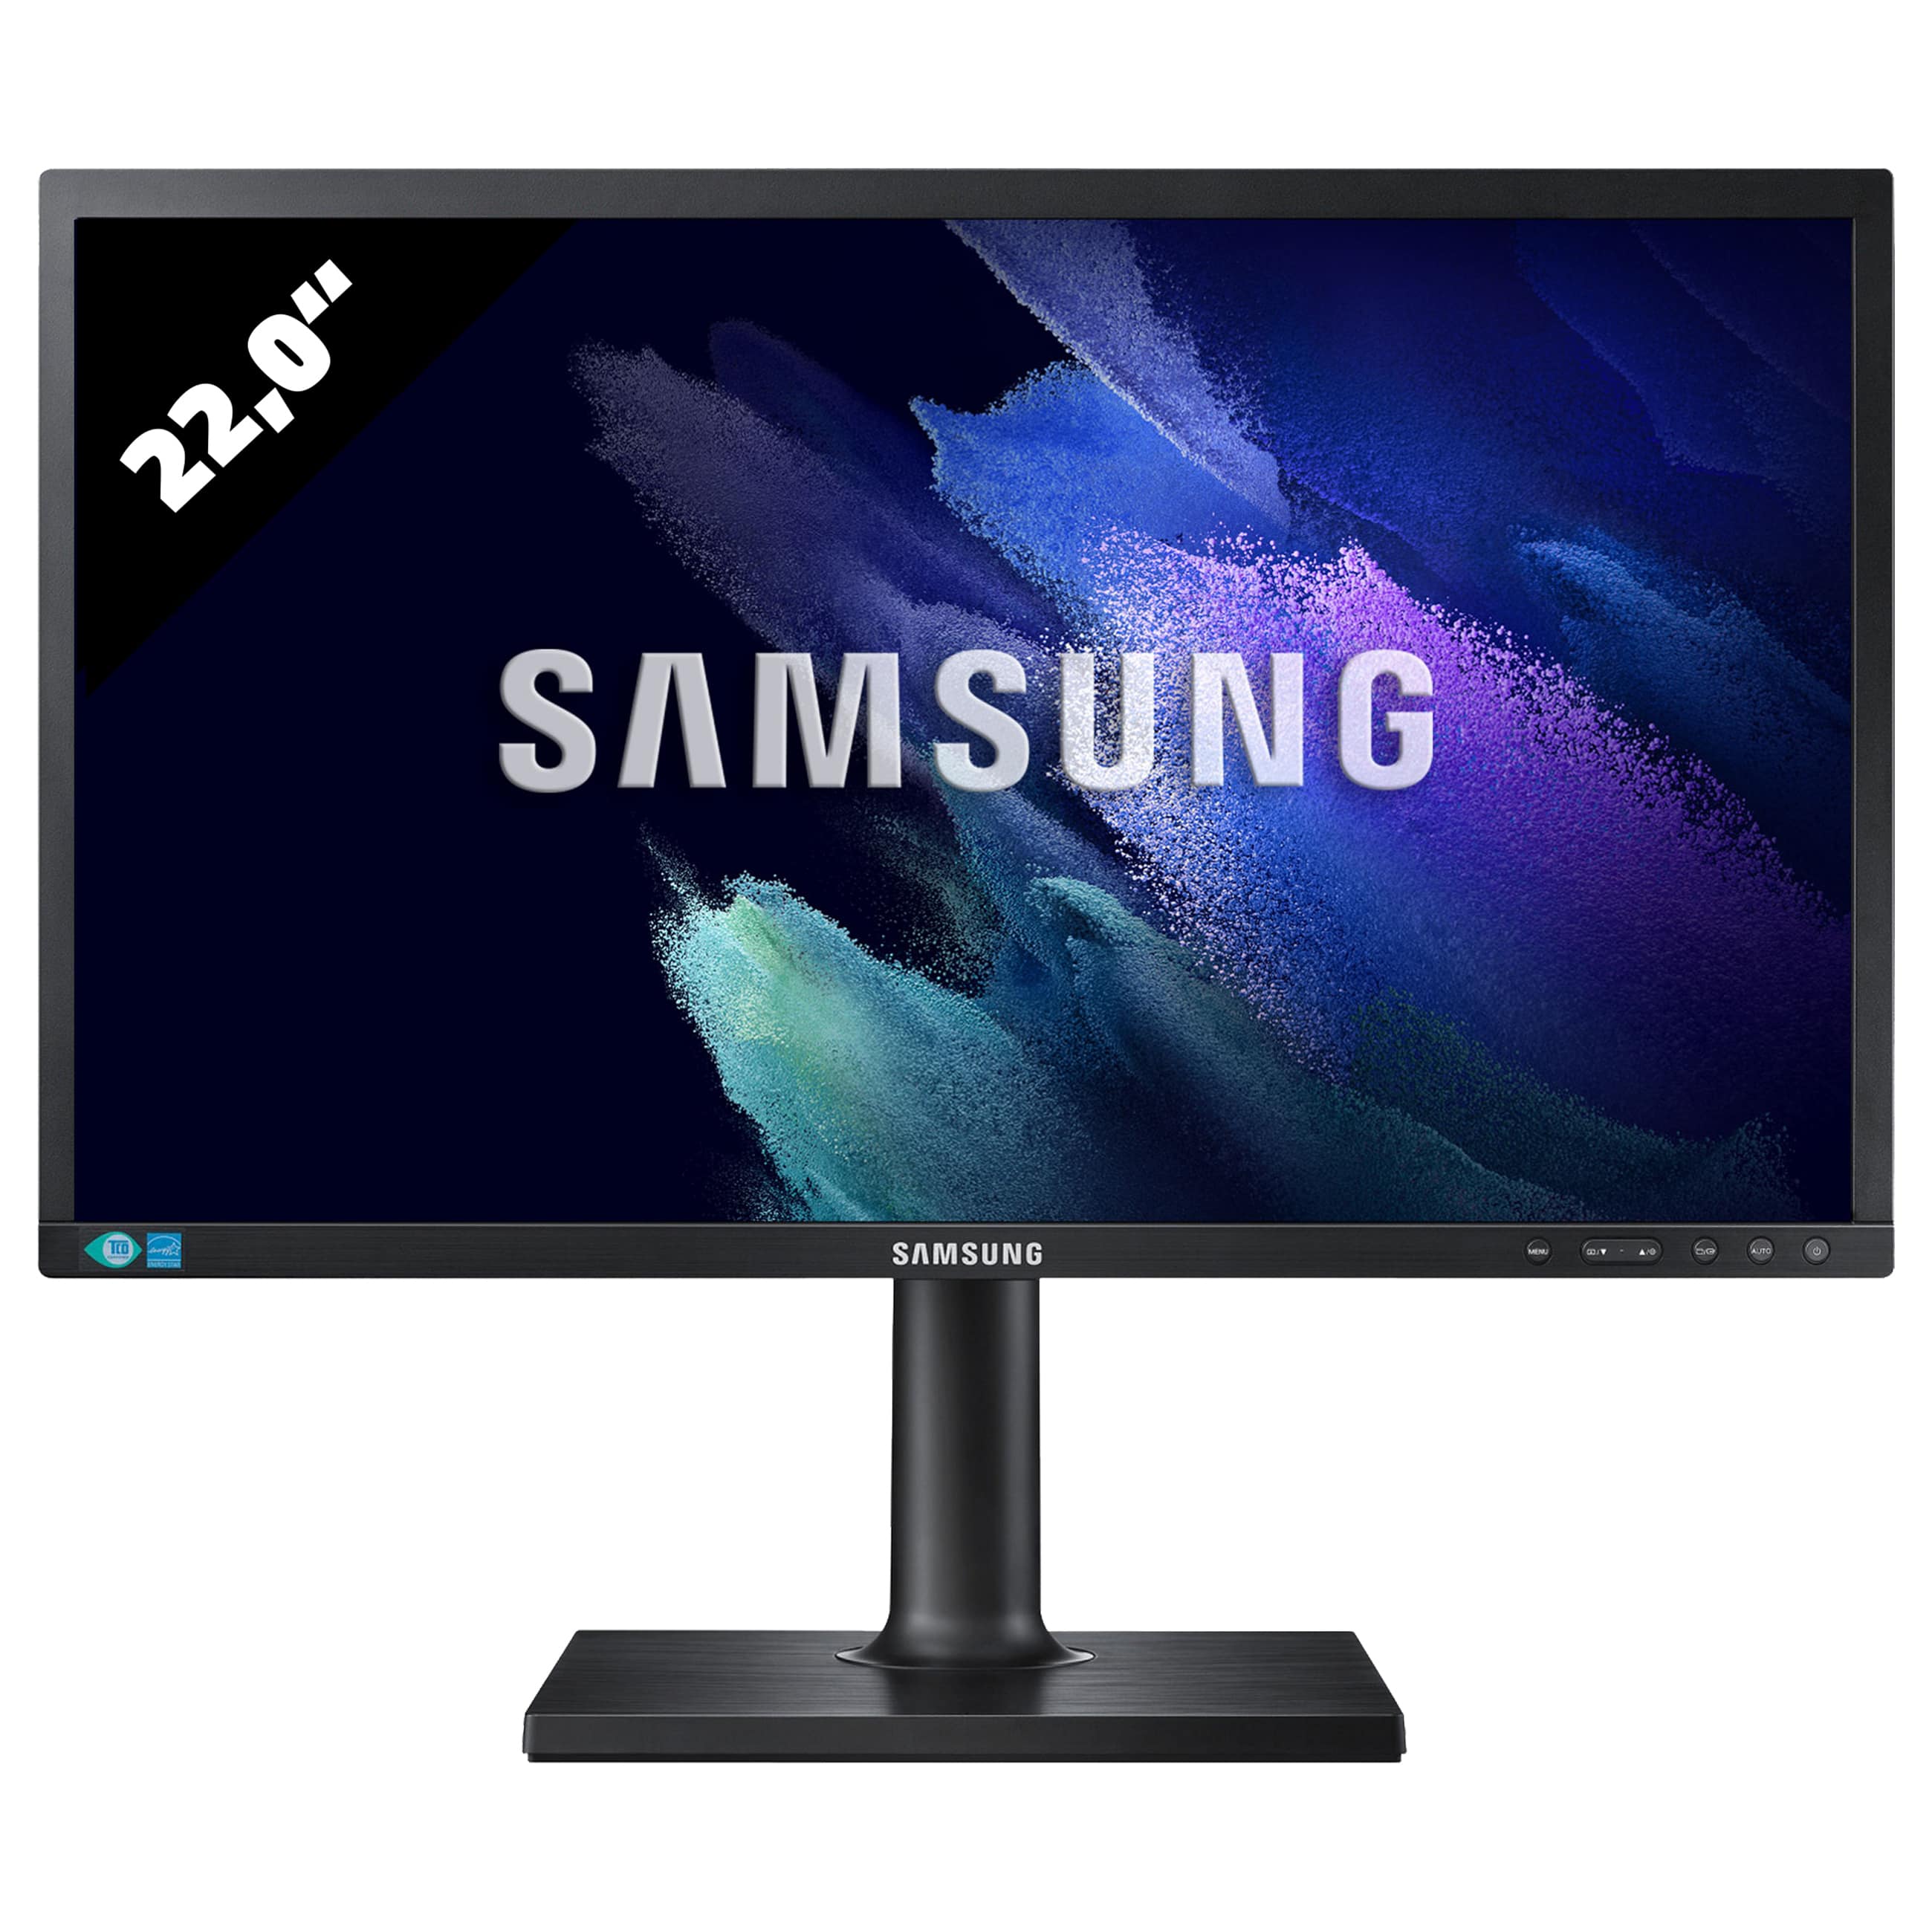 Samsung Color Display Unit S22E450 - 1680 x 1050 - WSXGA+